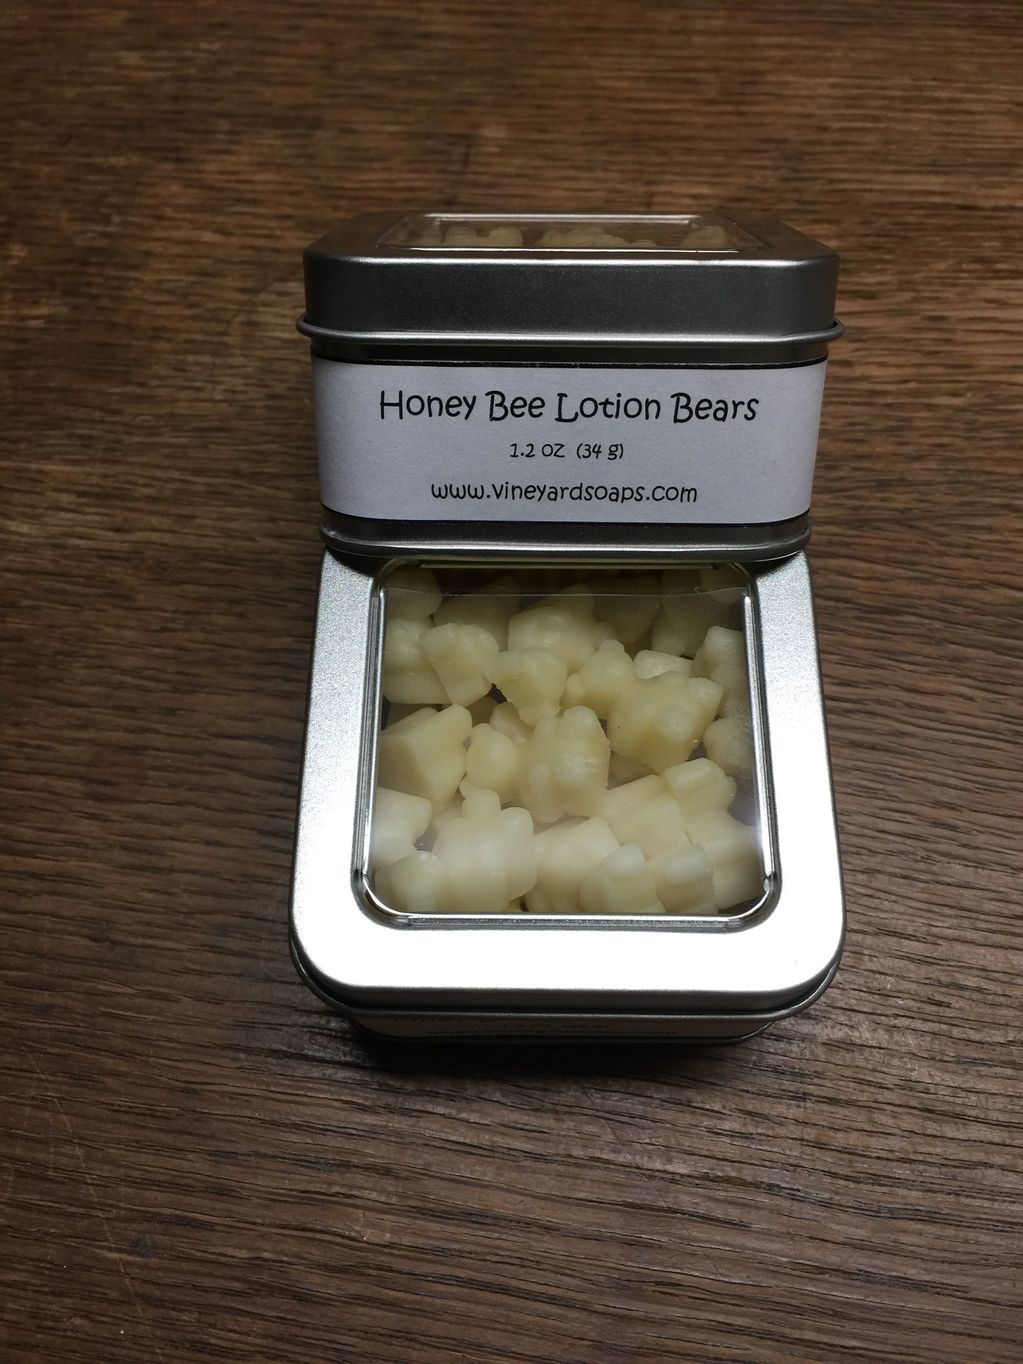 Honey Bee Lotion Bears